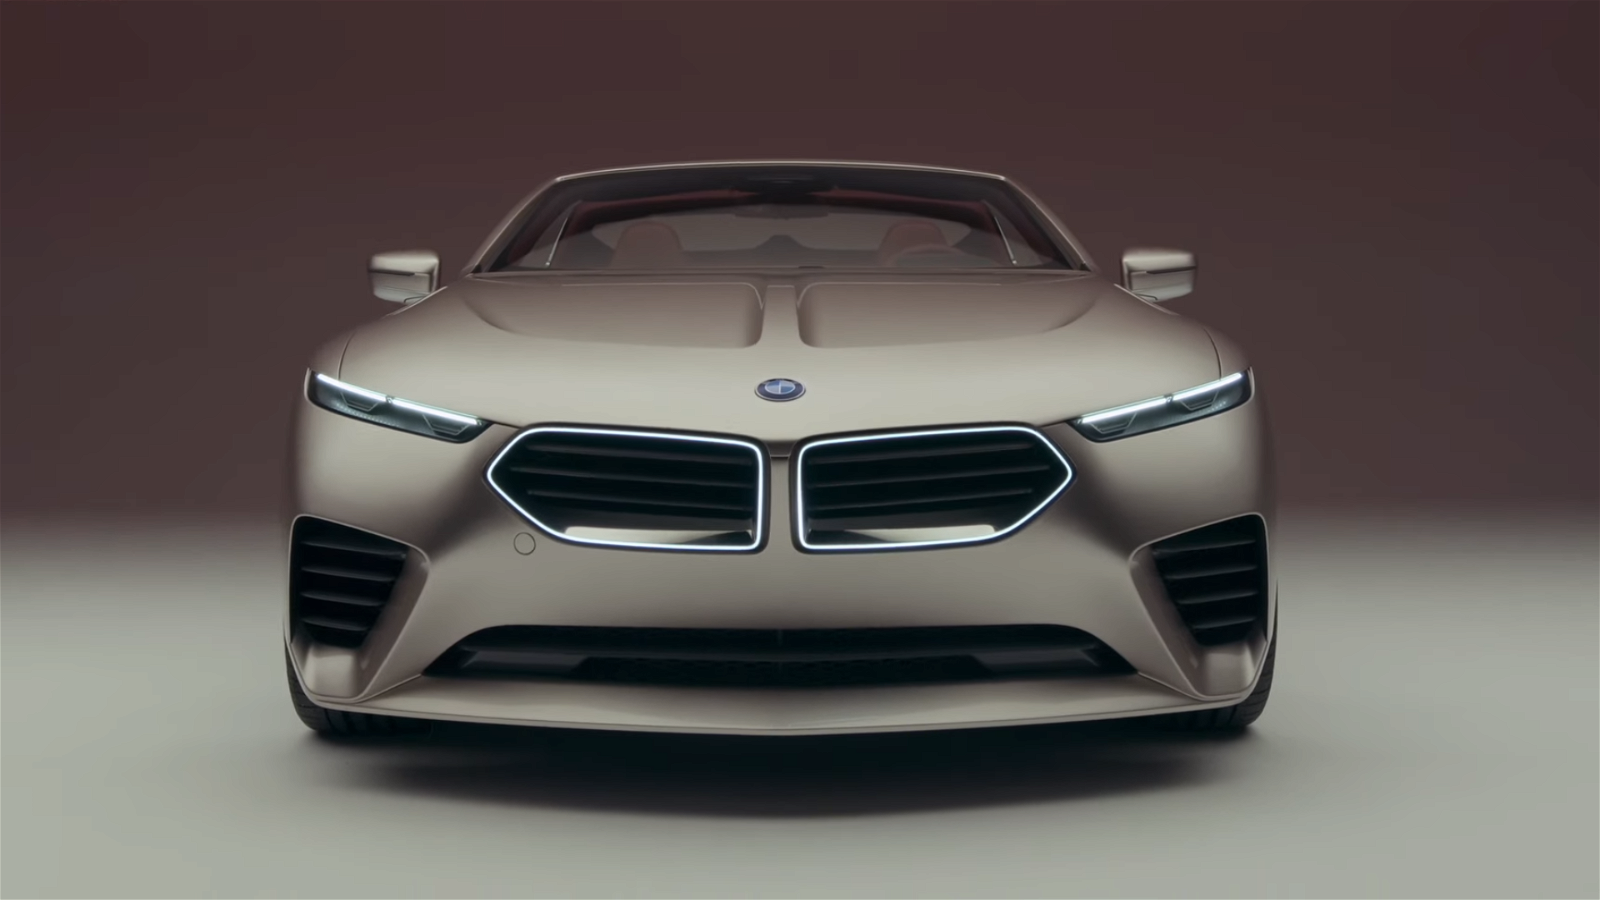 Immagine di La BMW M elettrica avrà fino a 1341 cavalli con prestazioni da record: ecco cosa sappiamo